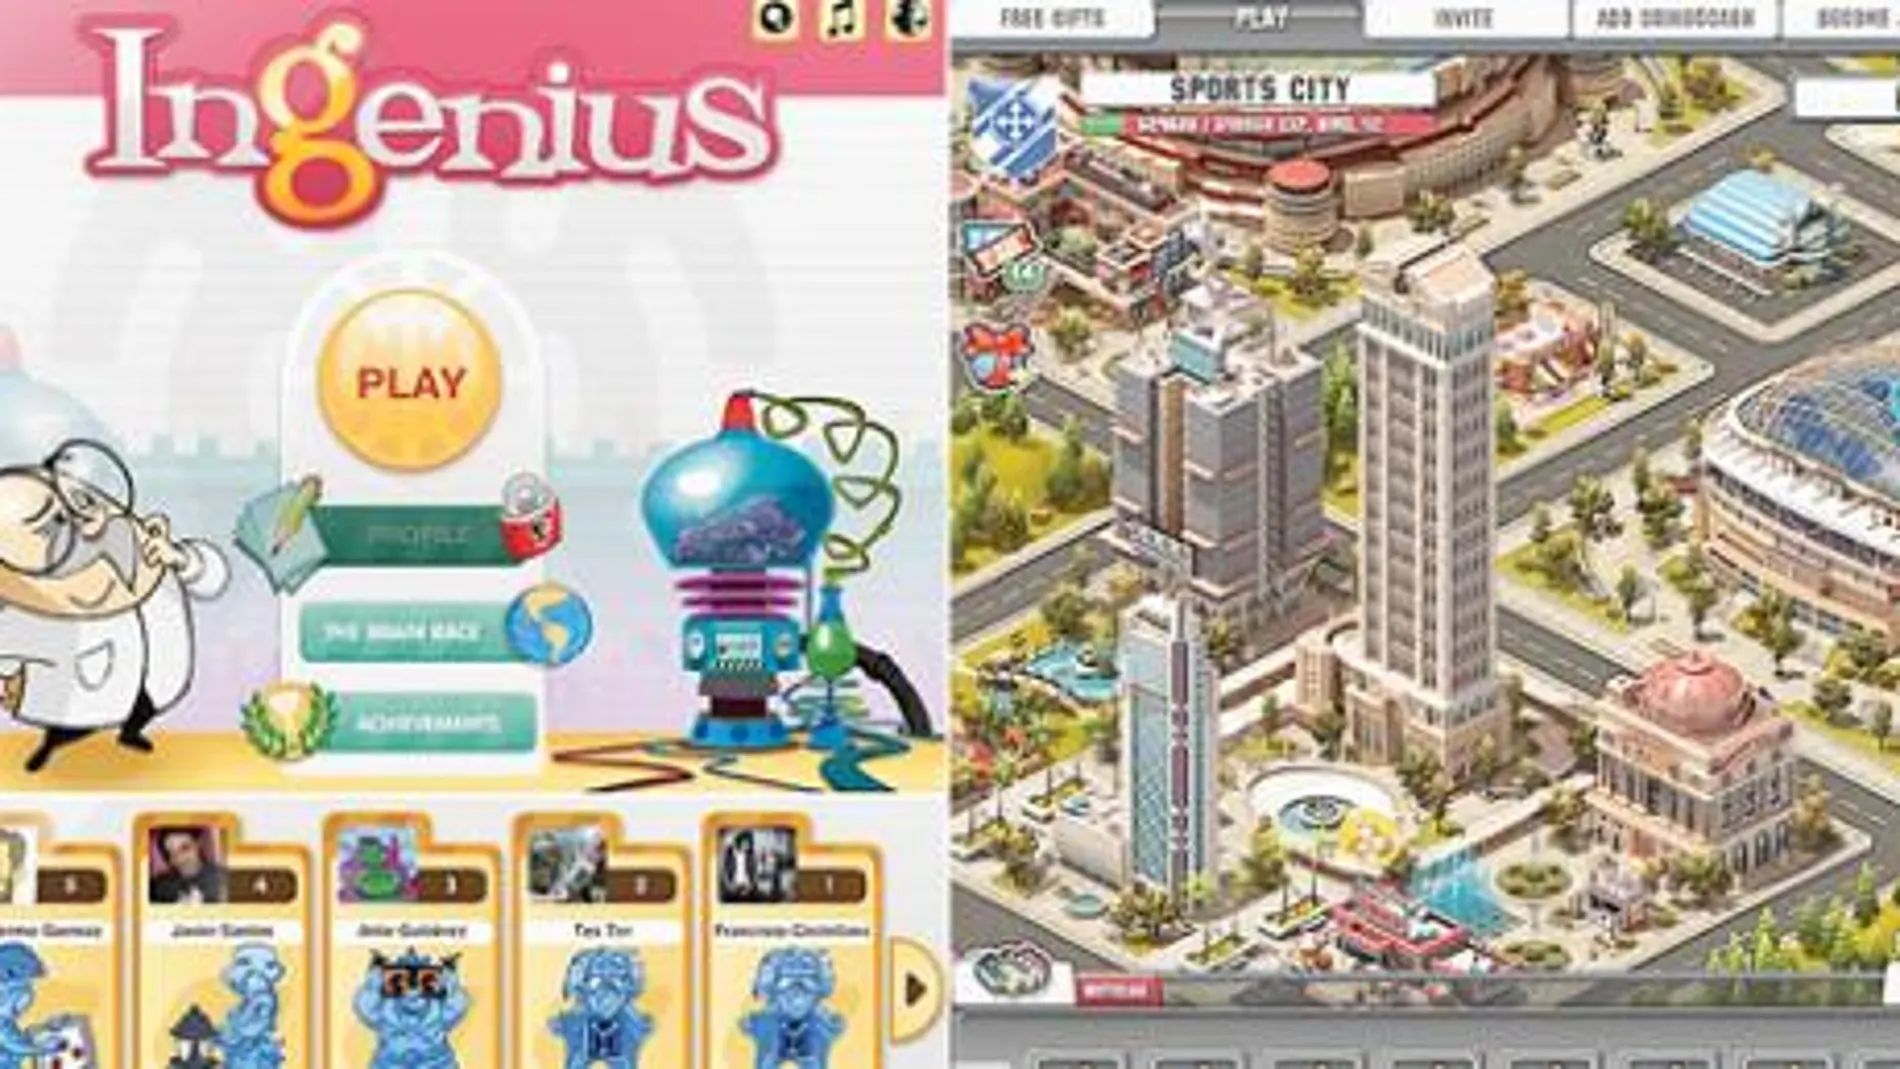 «Ingenius» es un juego de habilidad mental y visual que ofrece la posibilidad de retar a los contactos de la red social. En «Sports City» el jugador puede construir su propia ciudad deportiva, liderando equipos entre un total de ocho deportes diferentes.